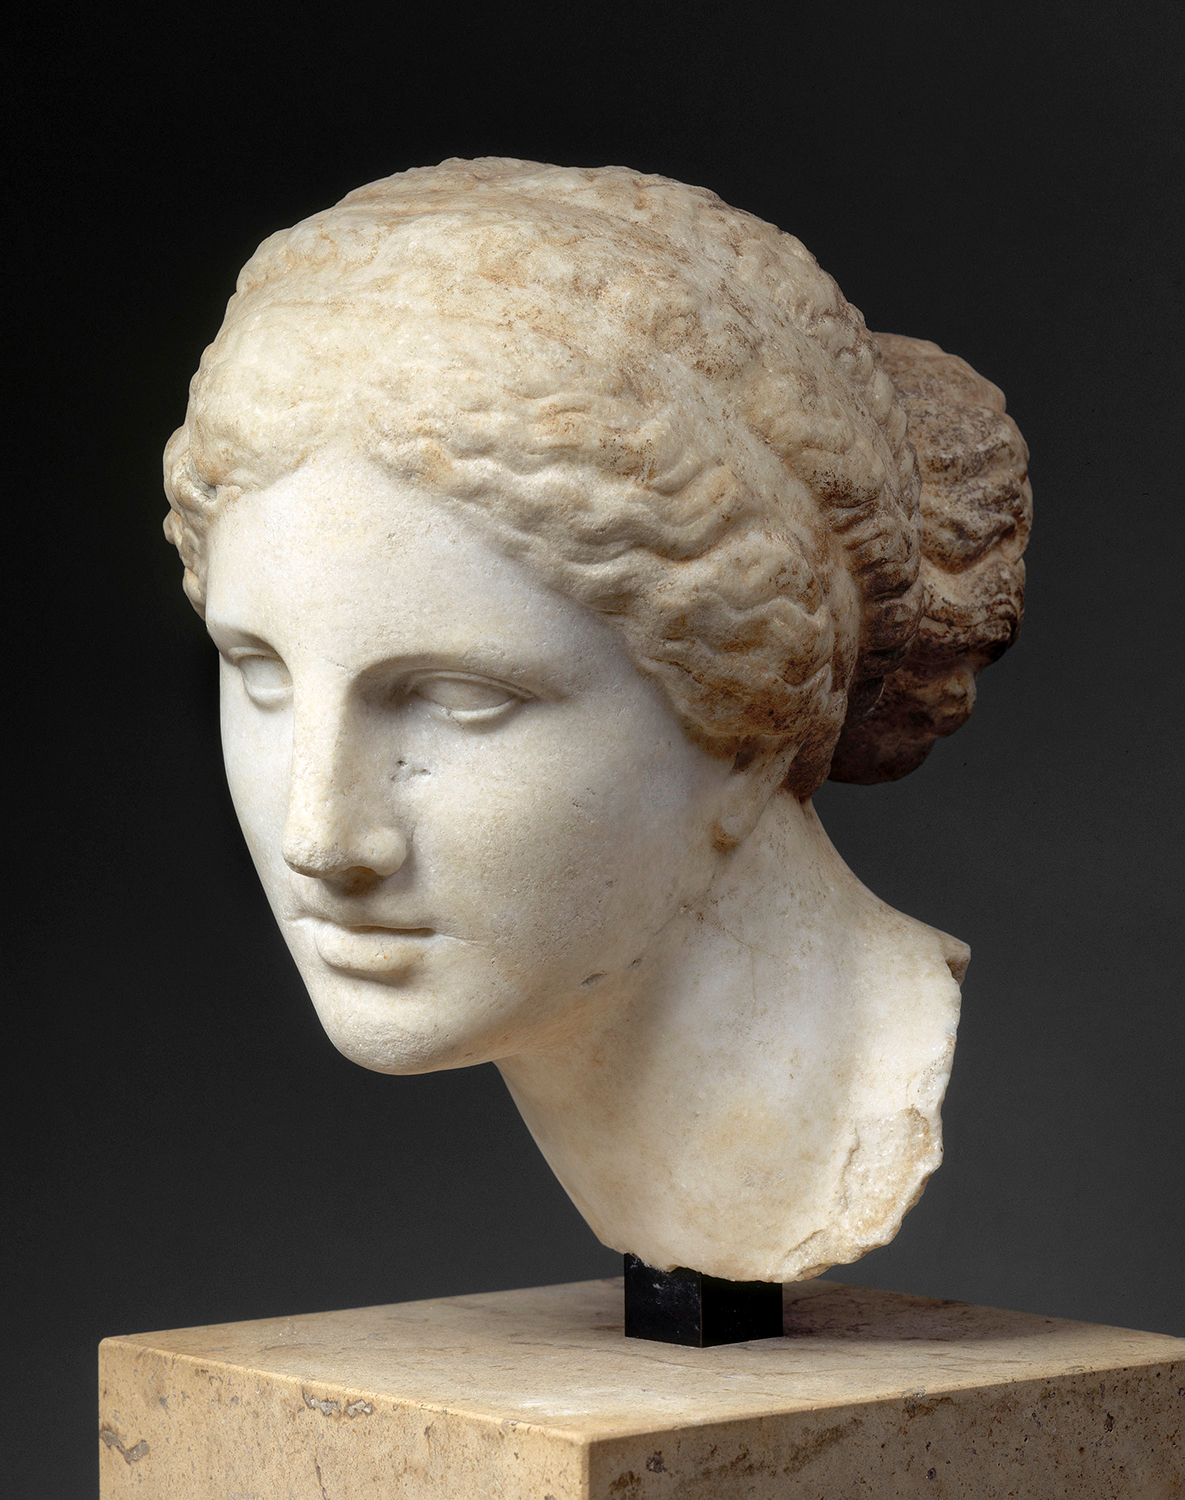 Ideal Greek Beauty - Venus de Milo and the Galerie des Antiques